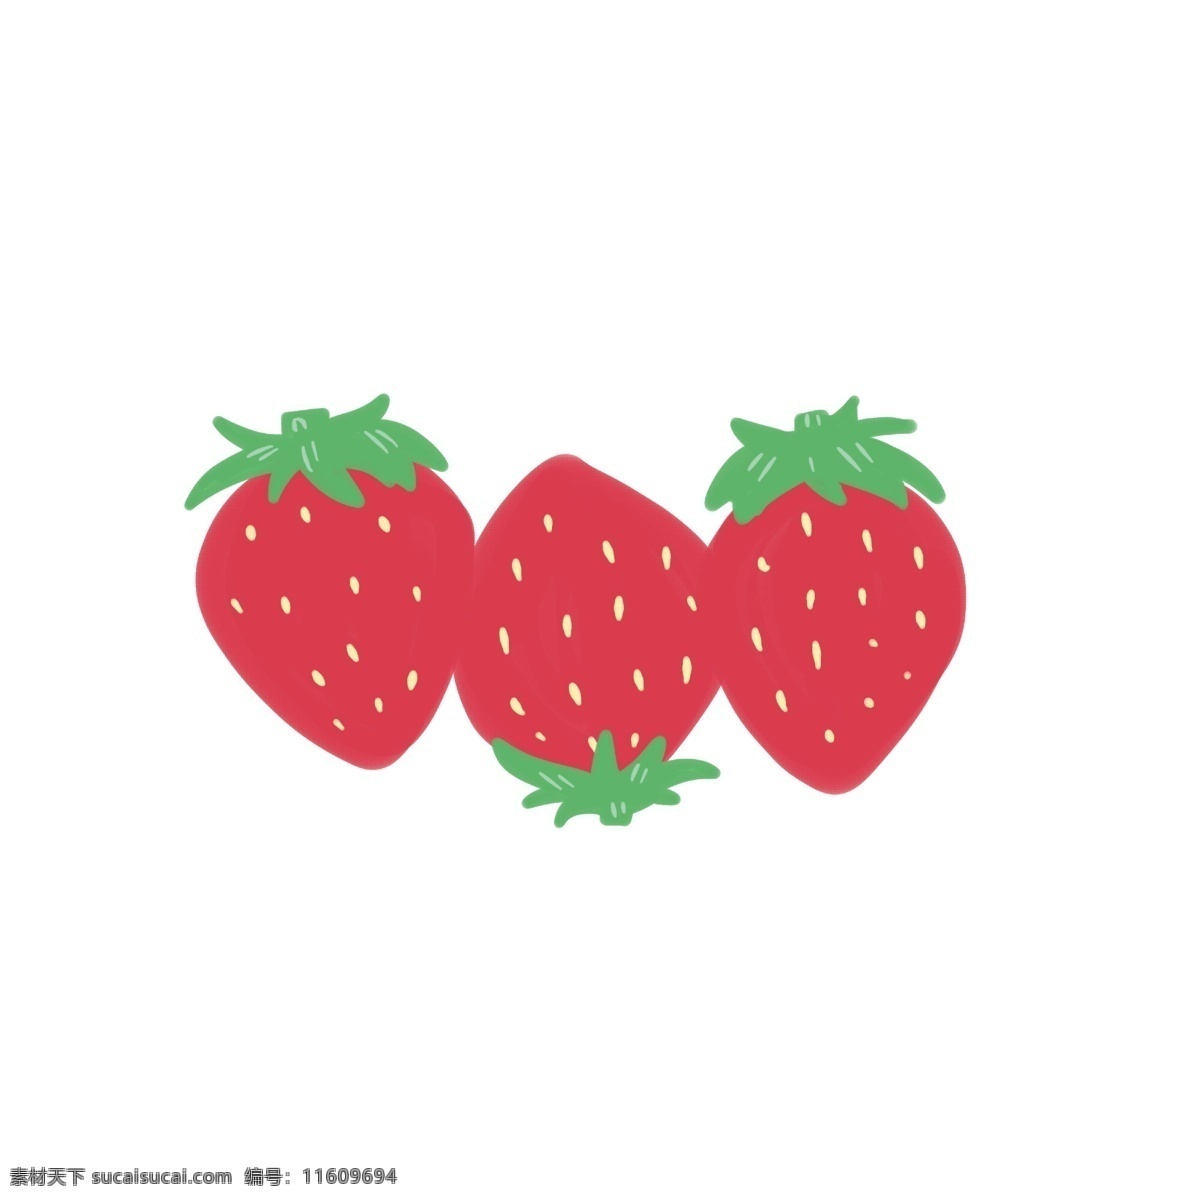 三只手 绘 水果 草莓 系列 扁平 卡通 装饰 贴画 三只 小粉花 大叶子 手绘 速写 心形 艺术性